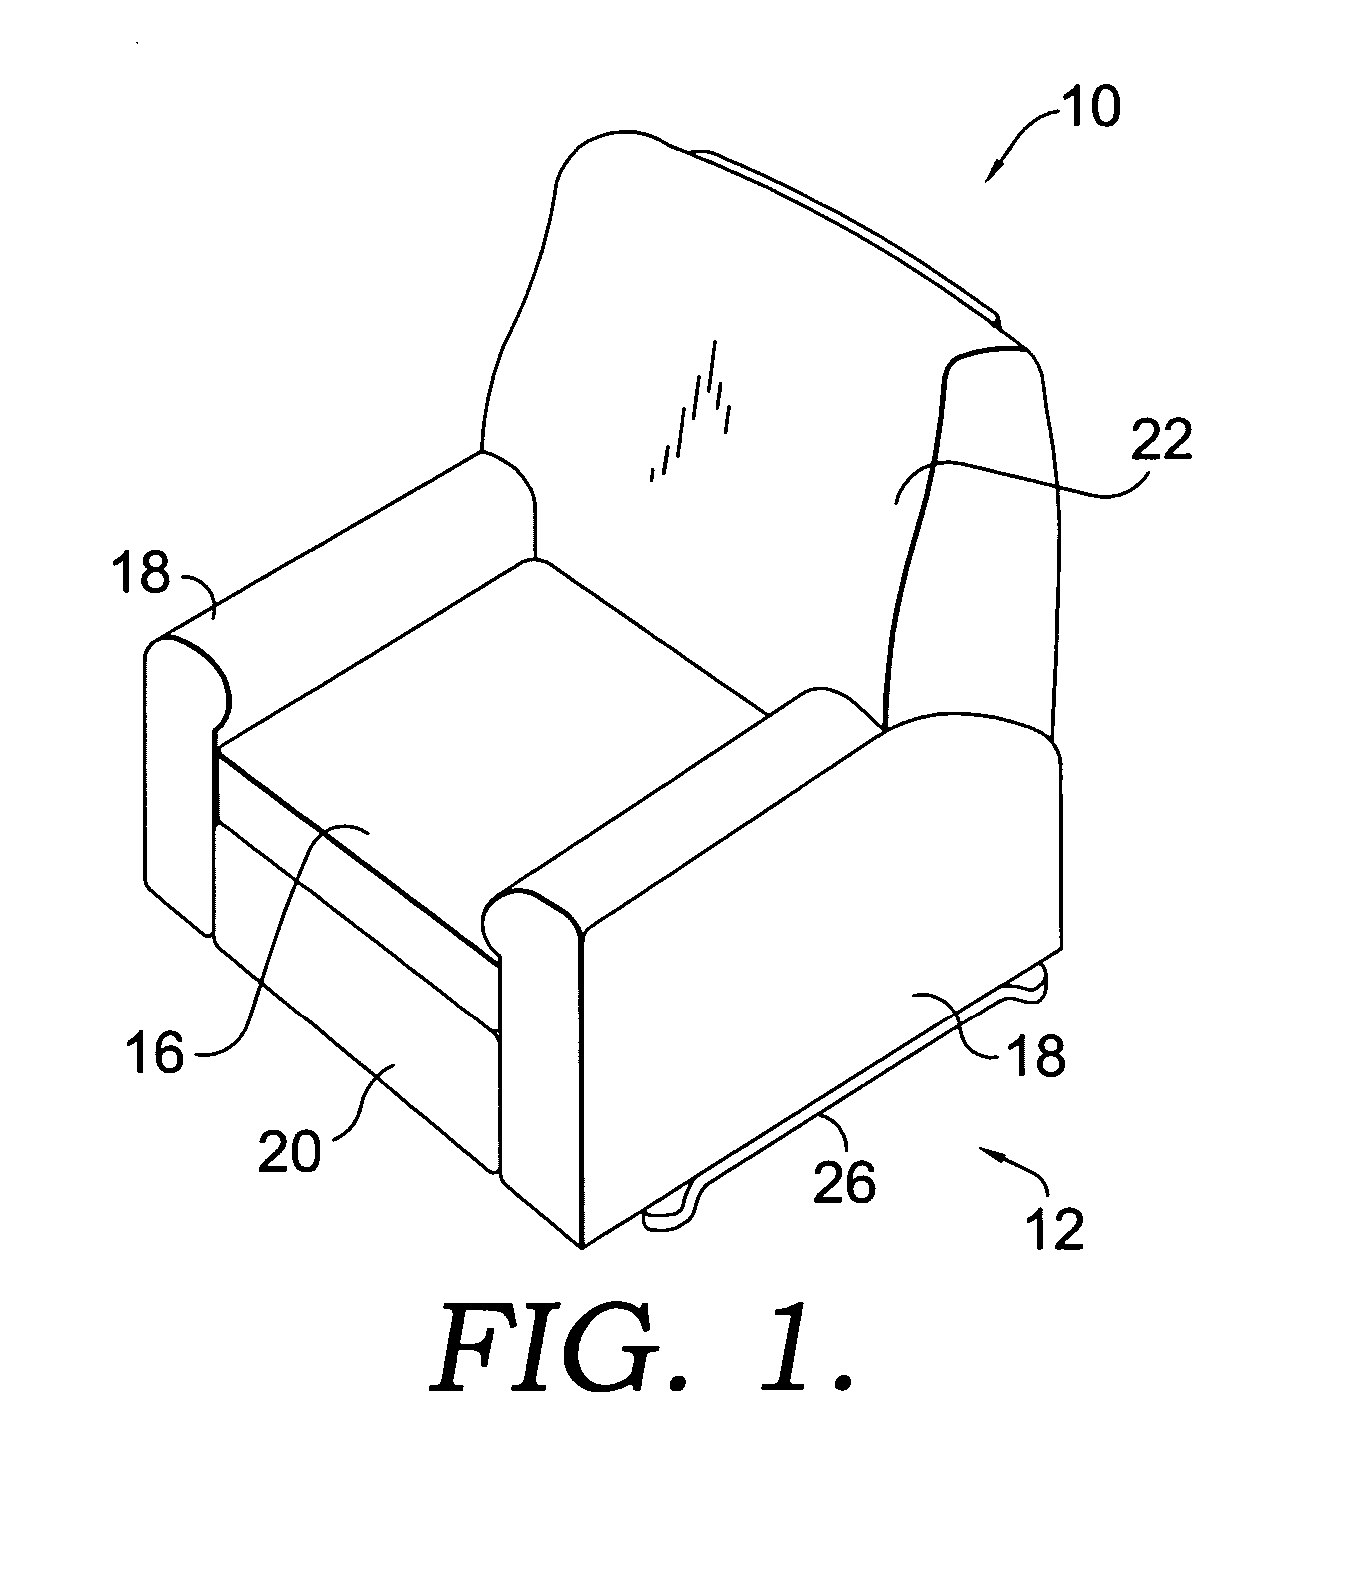 Recliner drive mechanism for a rocker chair